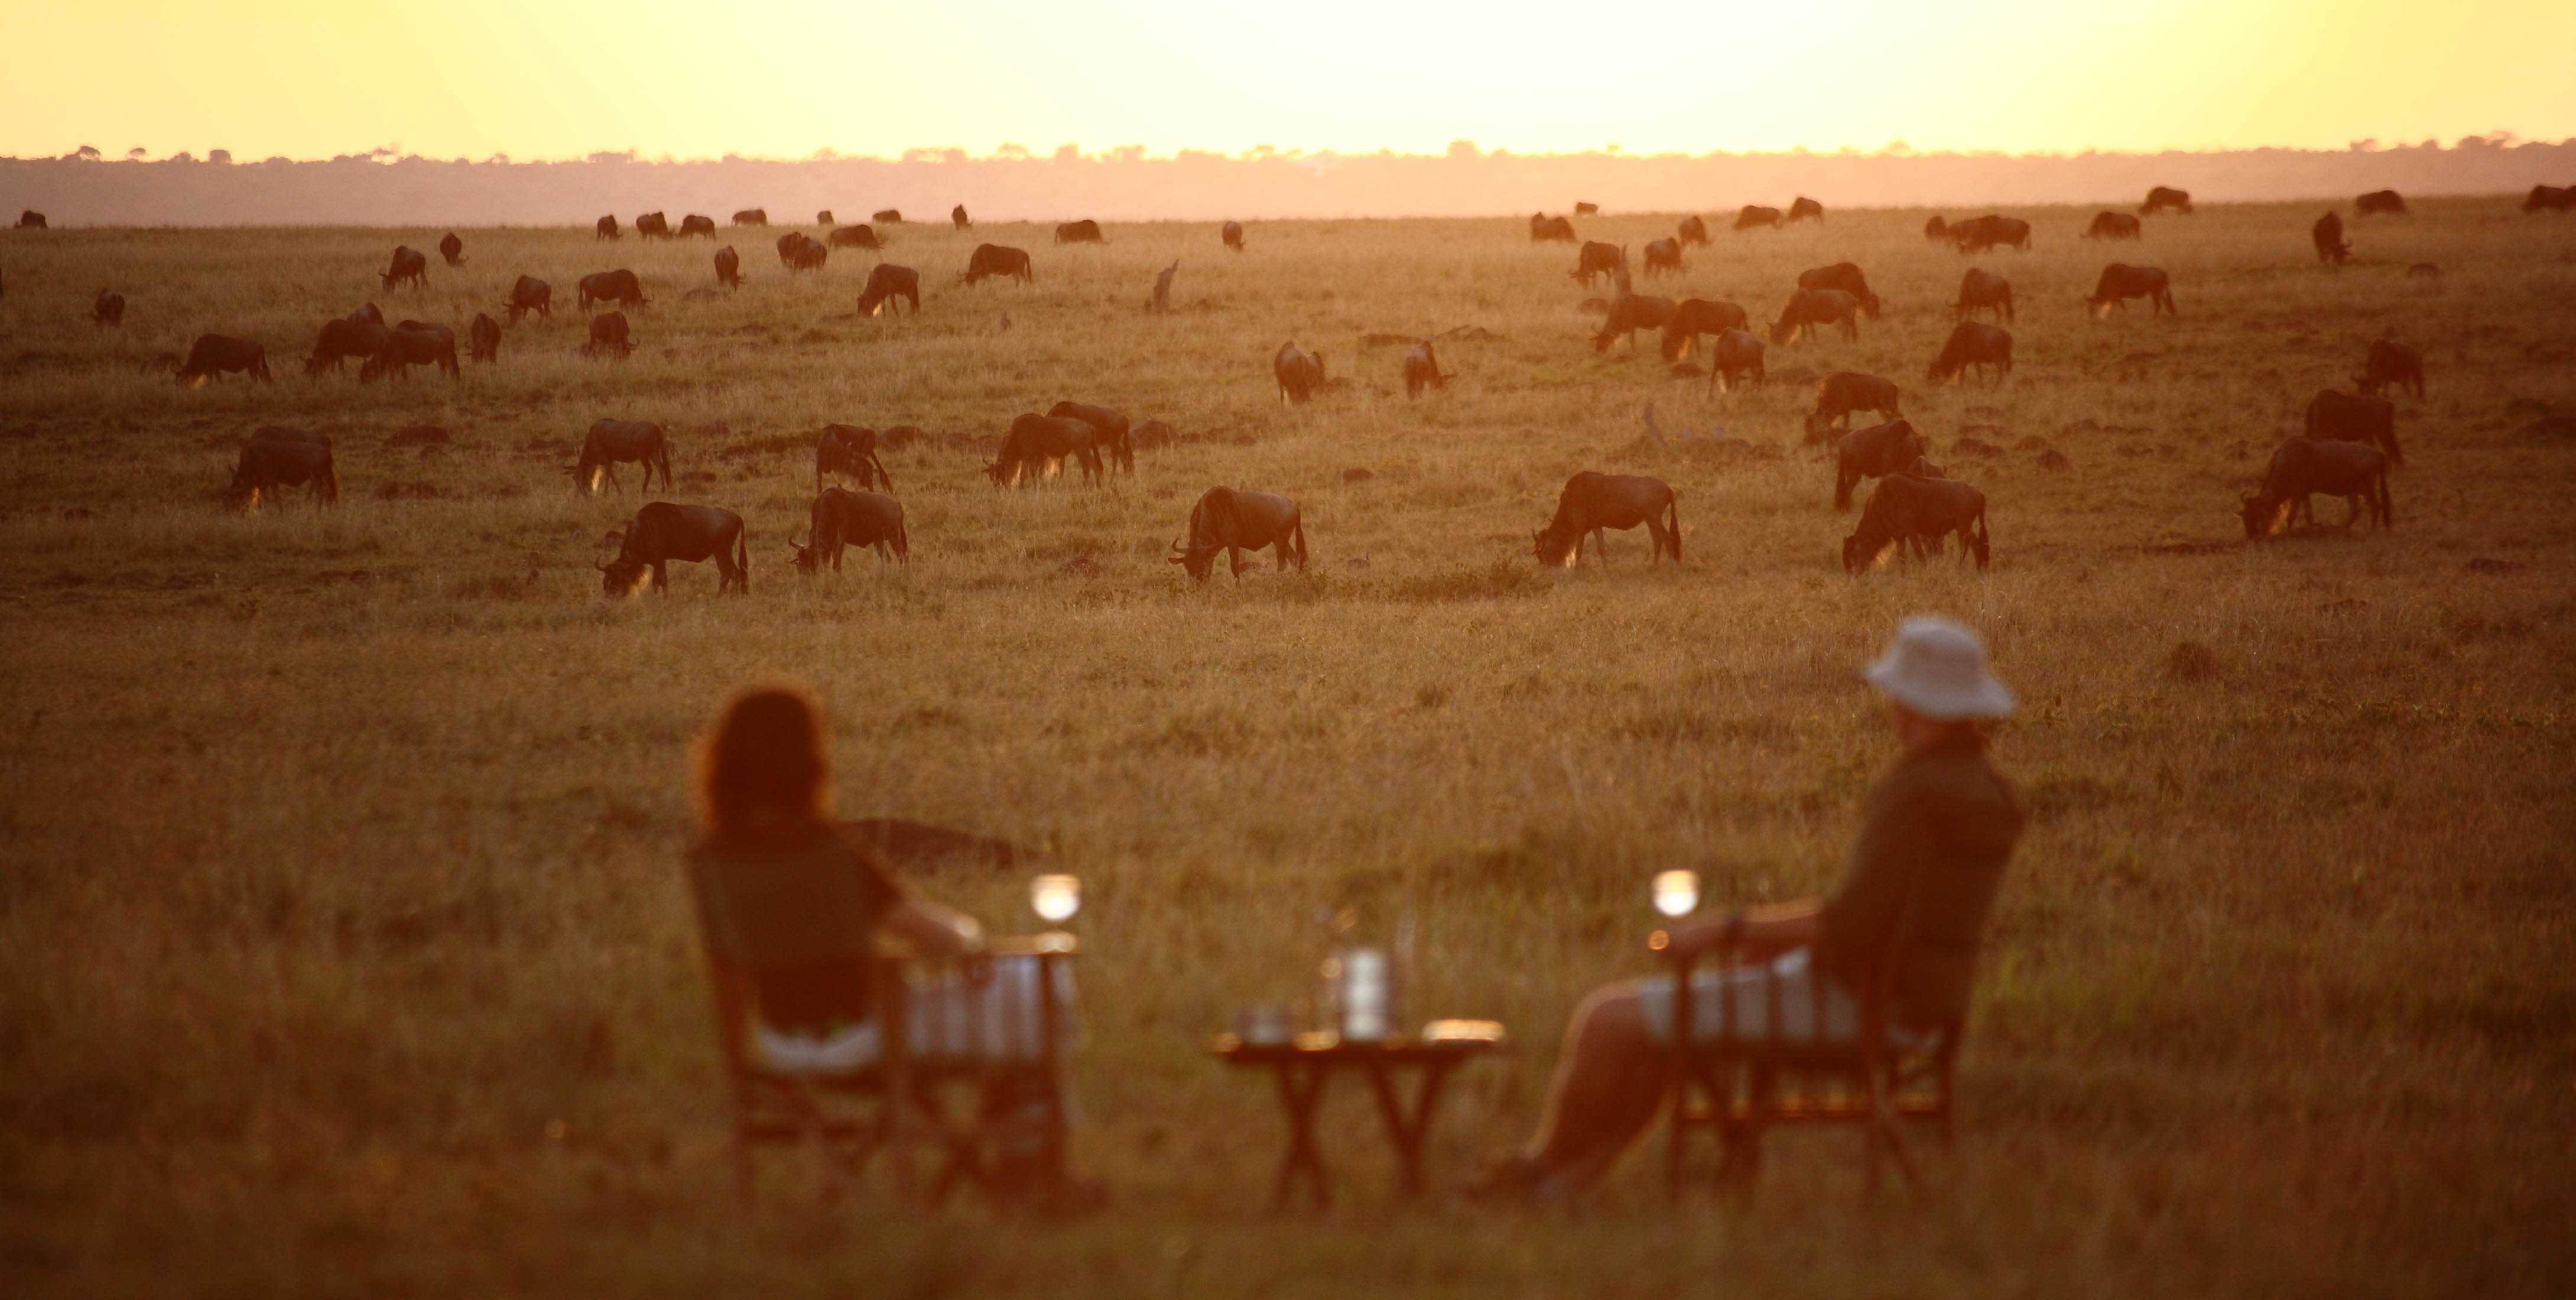 Sundowners in the Serengeti